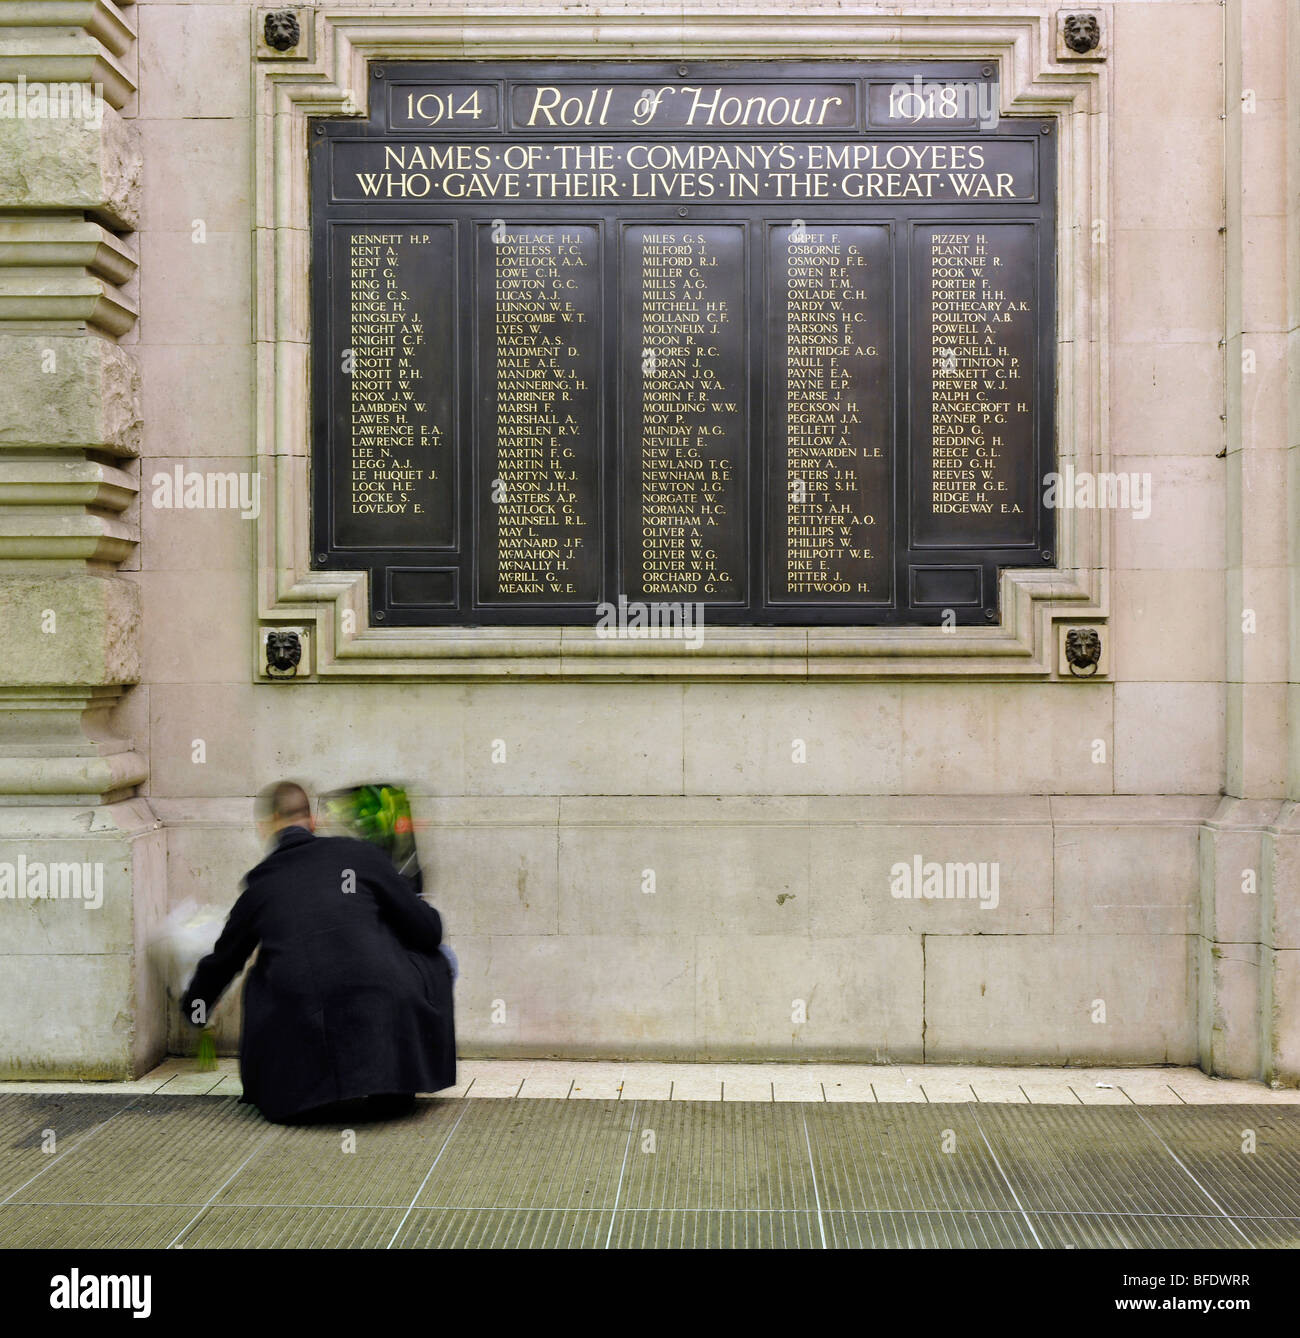 1914 - 1918 Rotolo di onore memorial presso l'entrata alla stazione di Waterloo, London, England, Regno Unito; un uomo mette fiori in memoria. Foto Stock